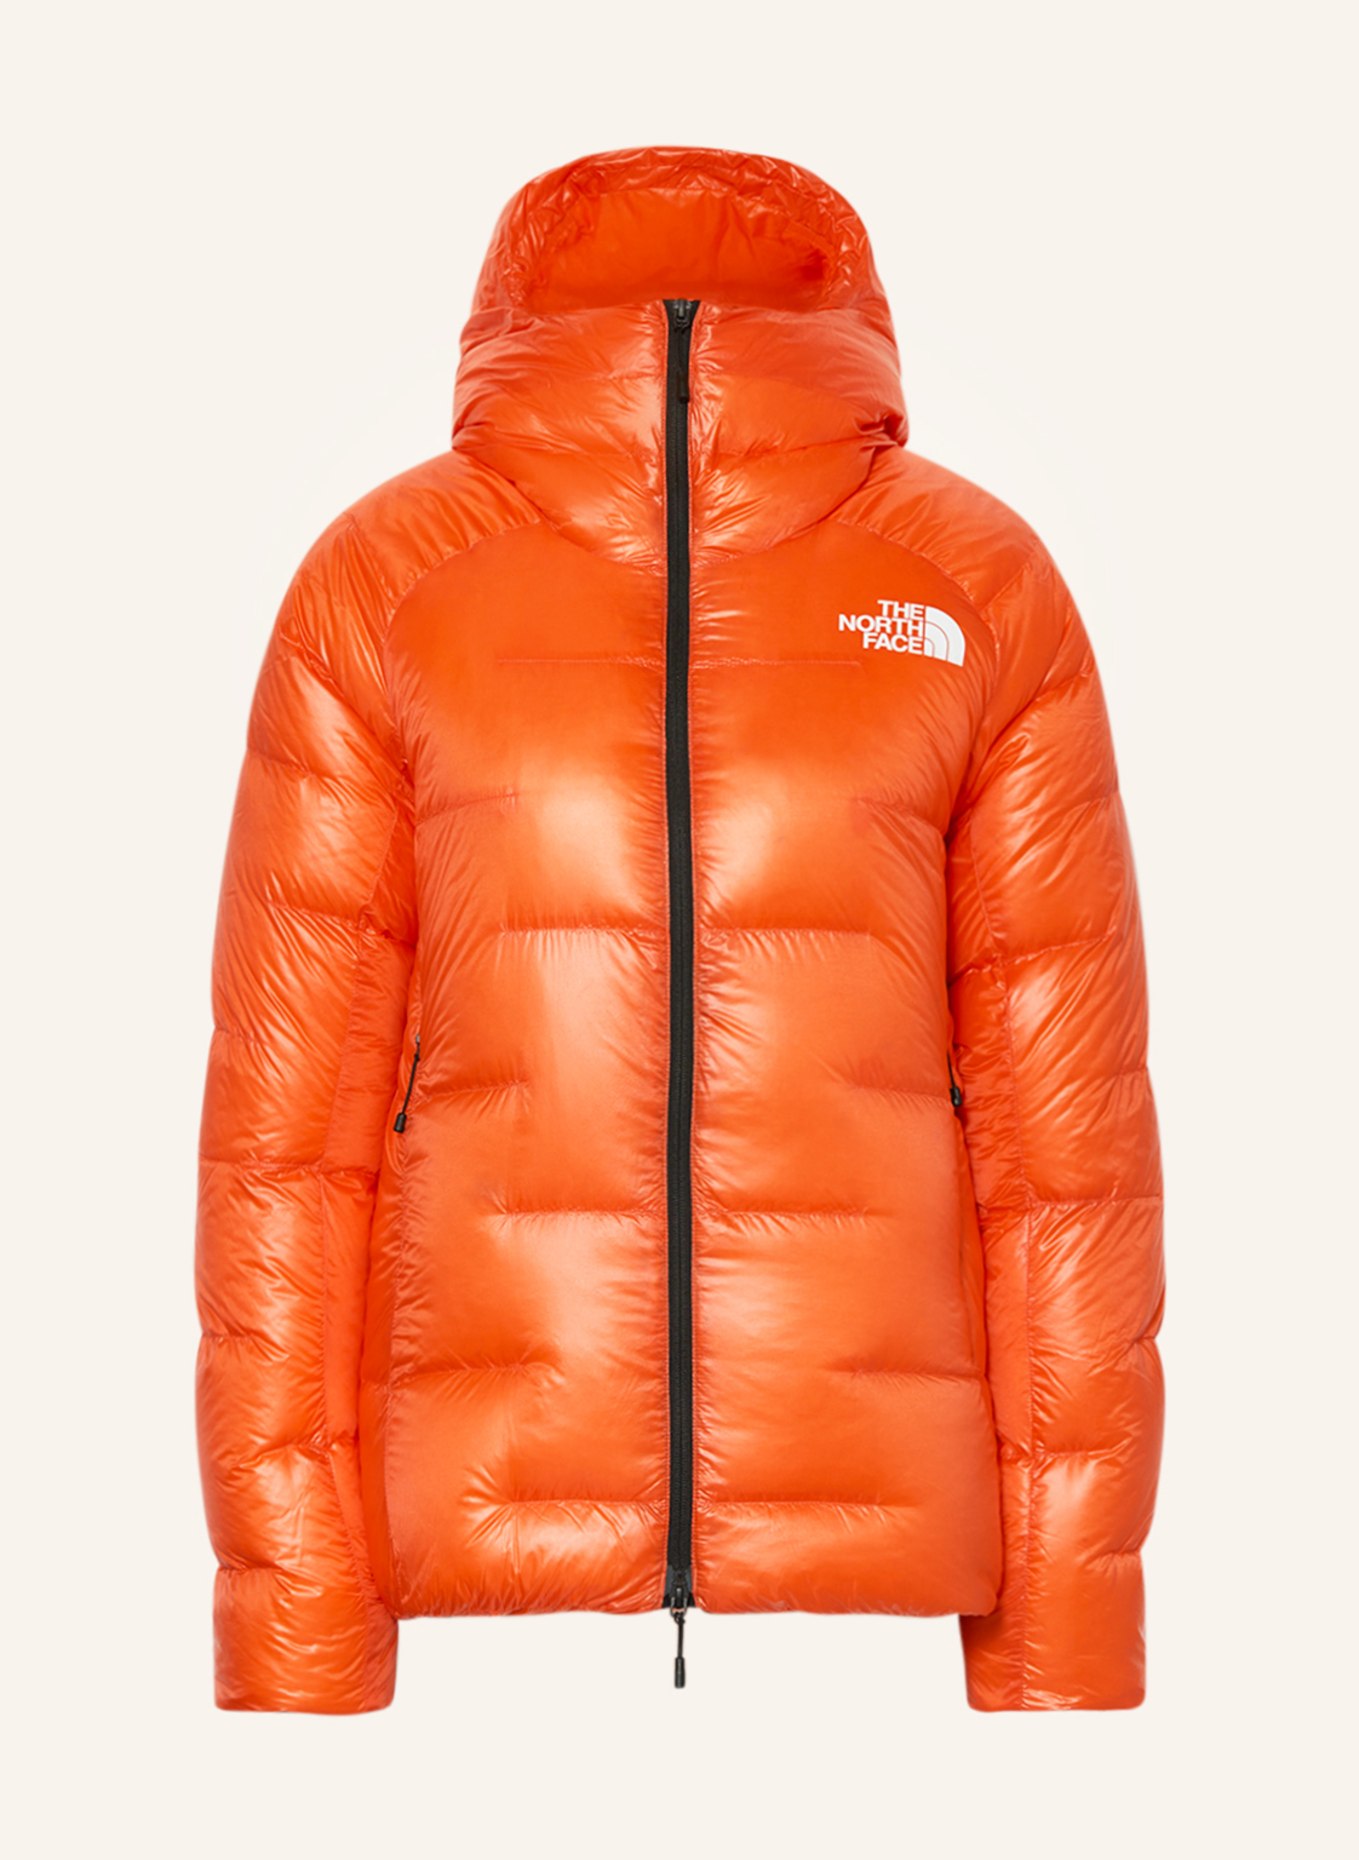 THE NORTH FACE PUMORI Lightweight orange SUMMIT down jacket in